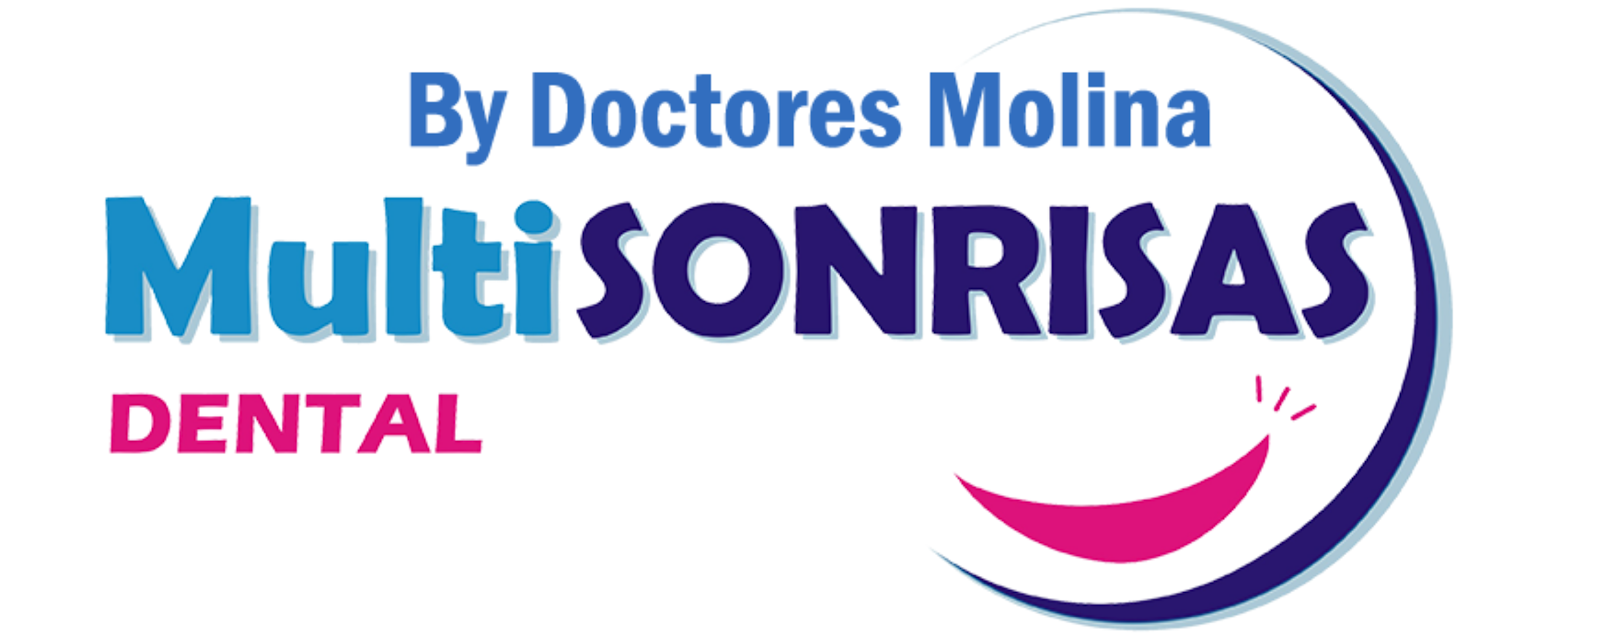 Perú : Multisonrisas By Doctores Molina  | Clínica Dental | Dentista 